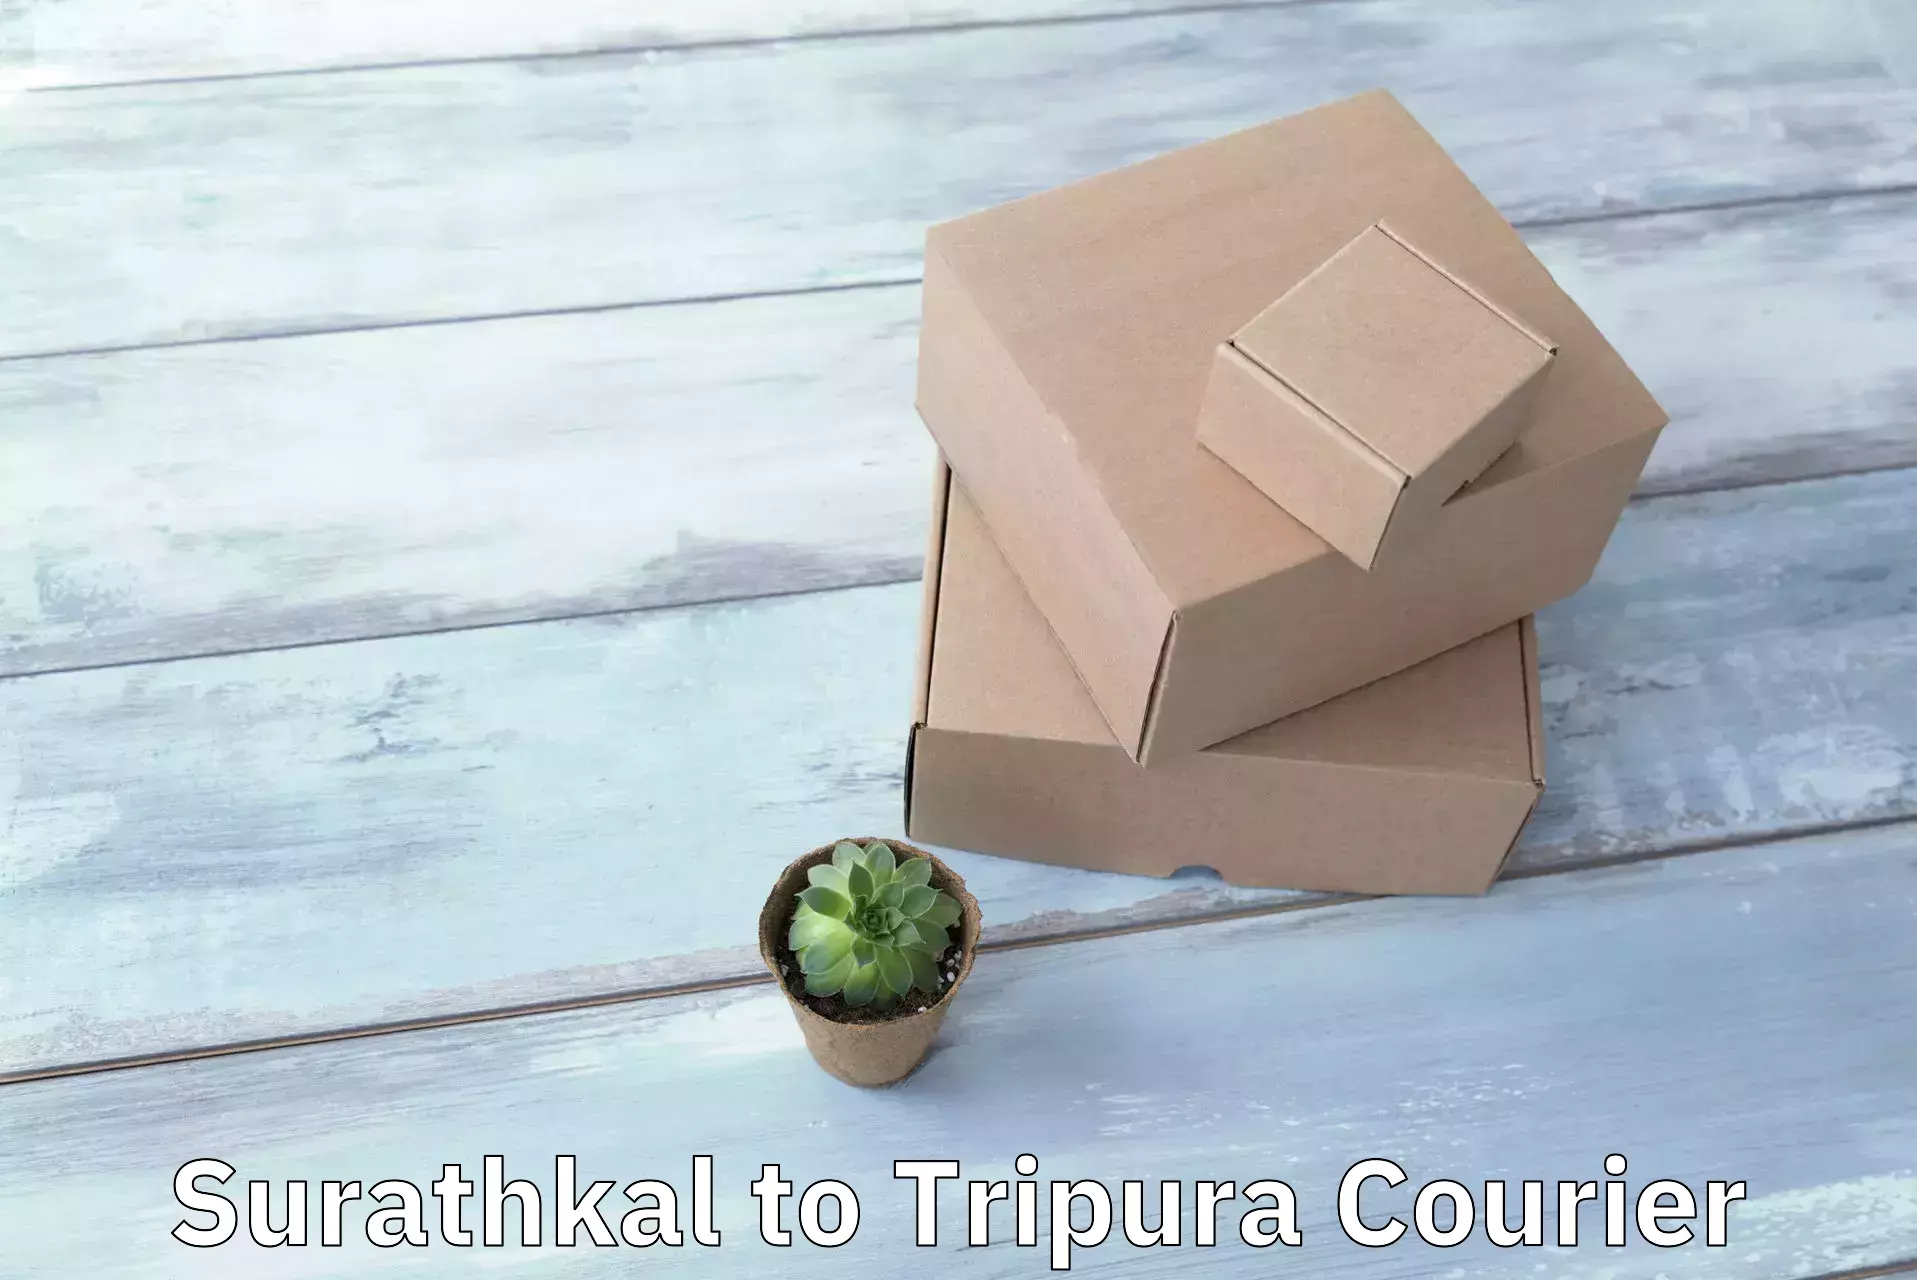 Door-to-door shipment Surathkal to North Tripura